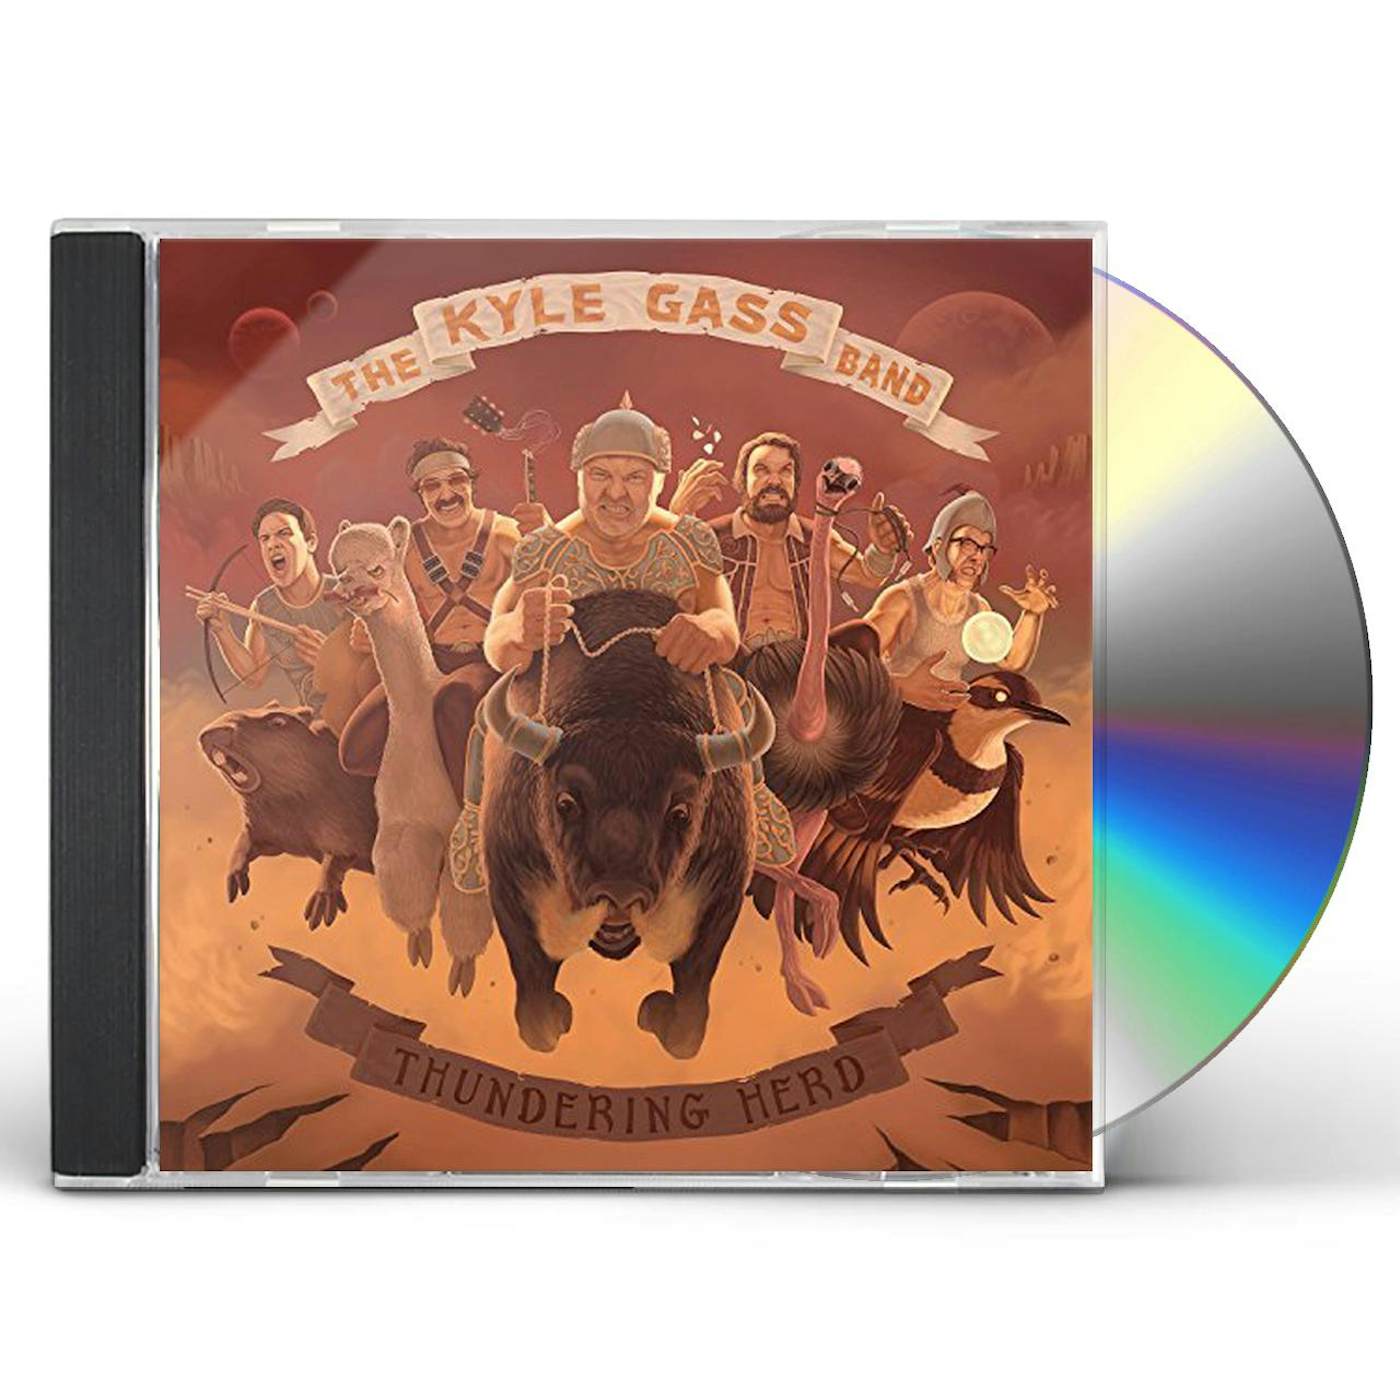 Kyle Gass Band THUNDERING HERD CD